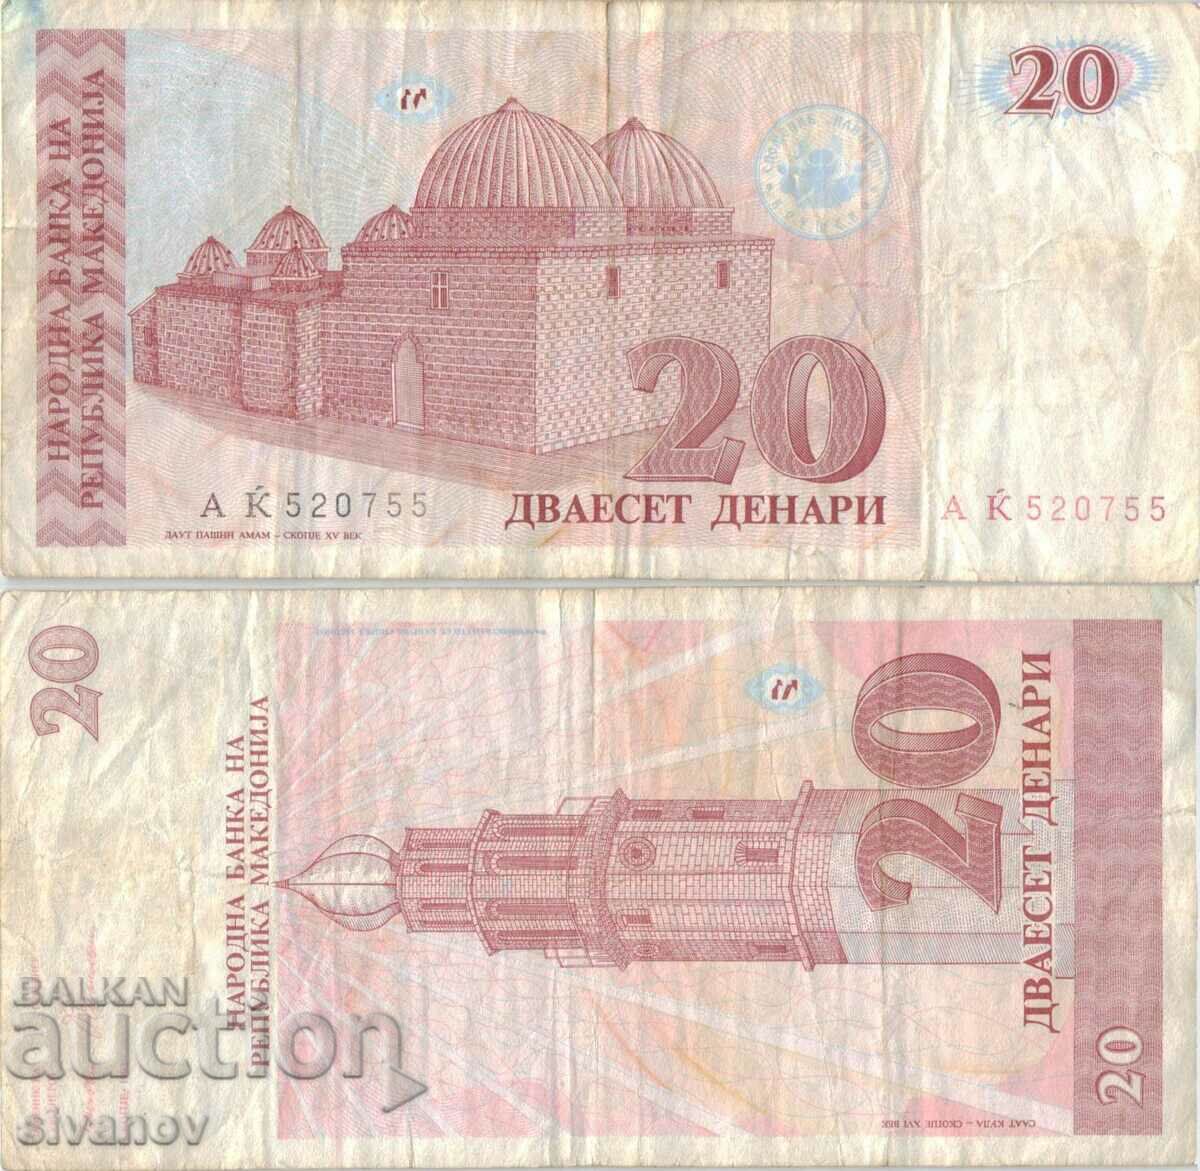 Macedonia 20 denari 1993 bancnota #5216